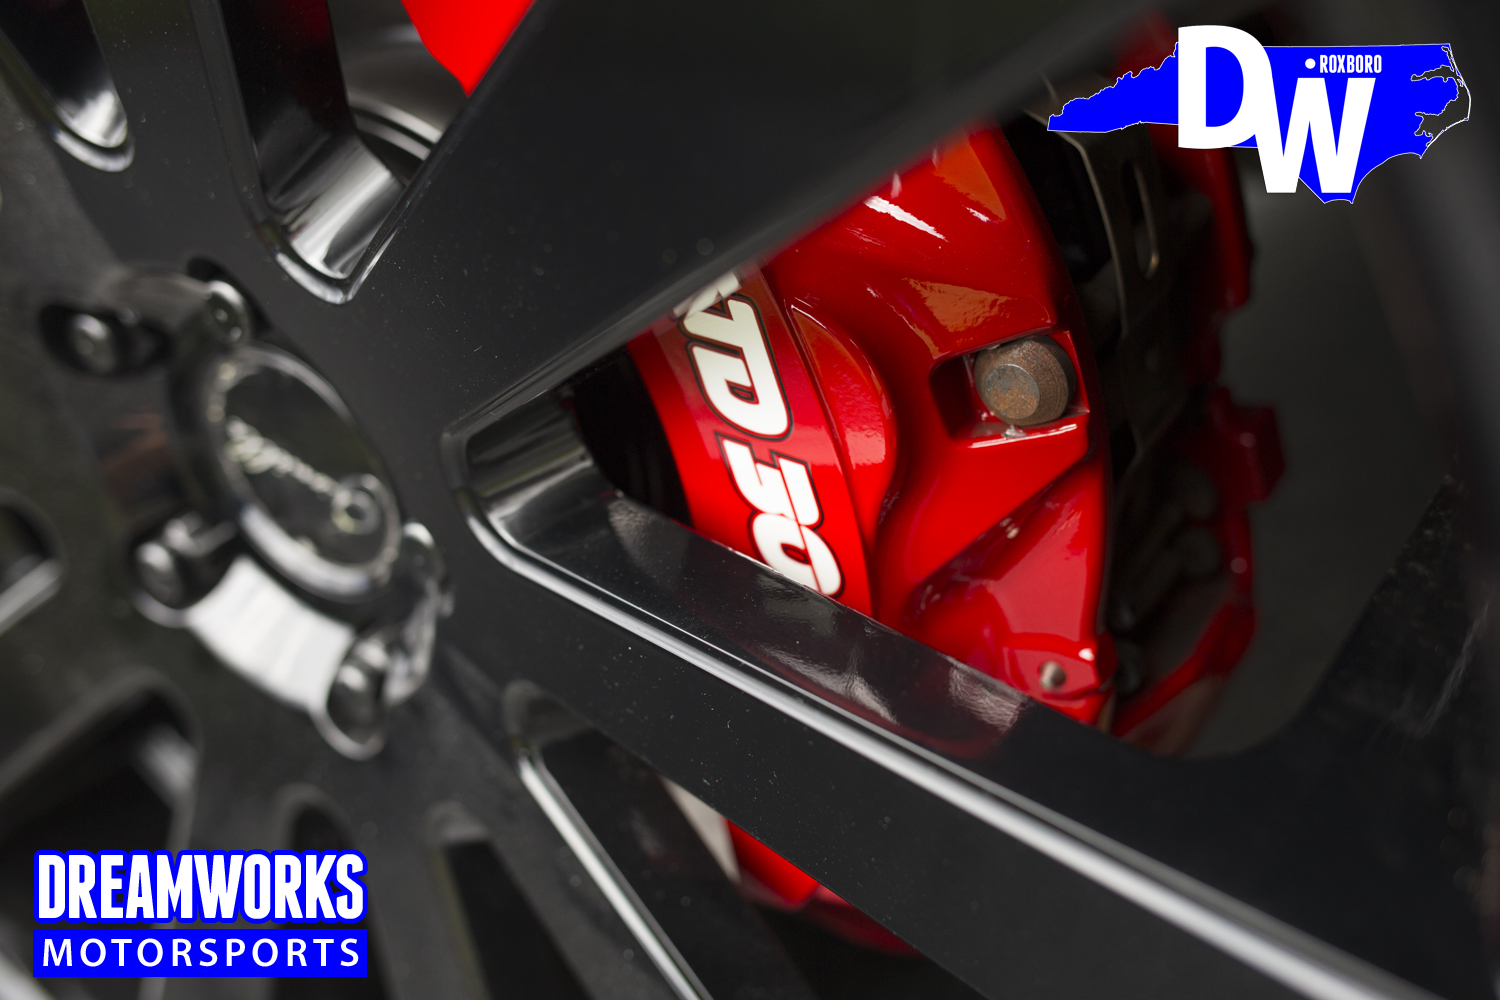 Troy_Daniels_Range_Rover_custom_painted_brakes_by_Dreamwroks_Motorsports.jpg